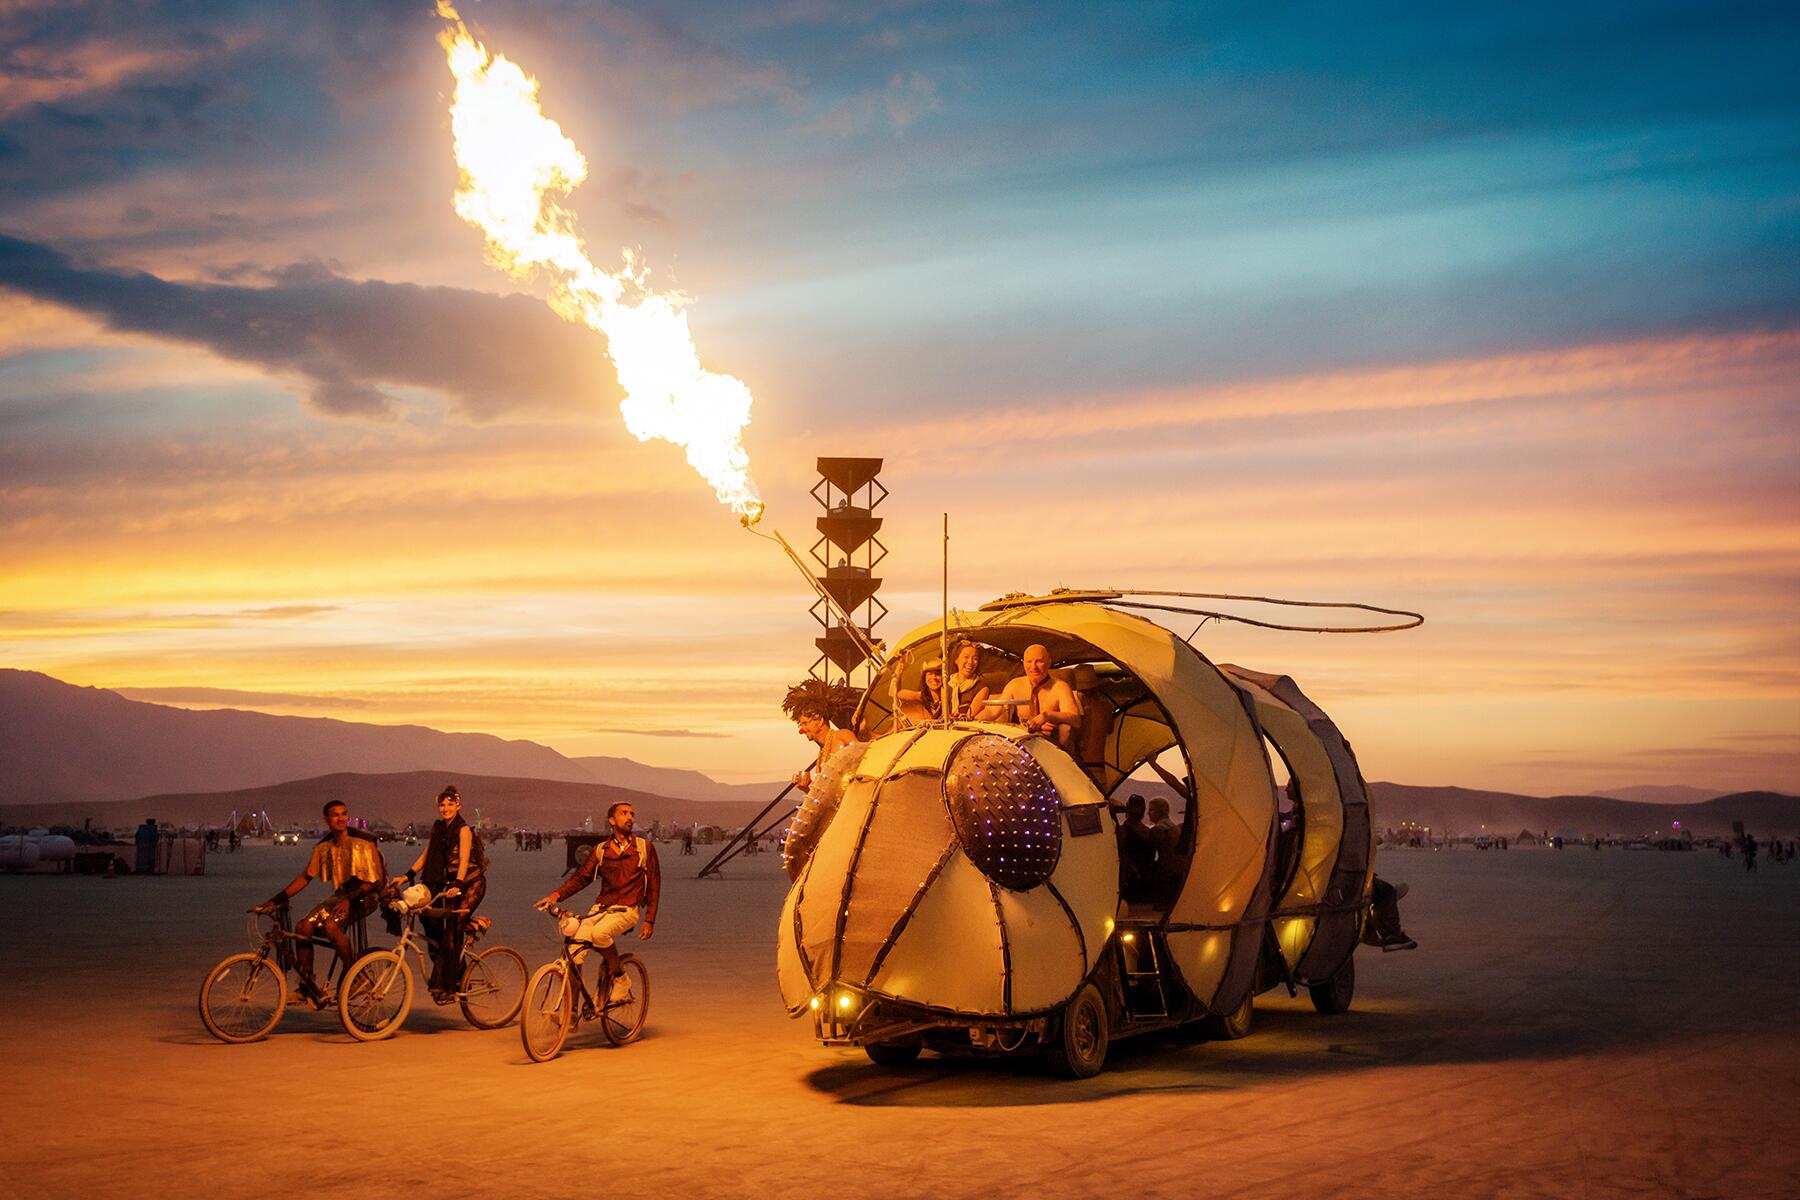 <a href='https://www.fodors.com/go-list/2022/west-usa#burning-man'>Fodor’s Go List 2022: Burning Man, Black Rock City, Nevada</a>